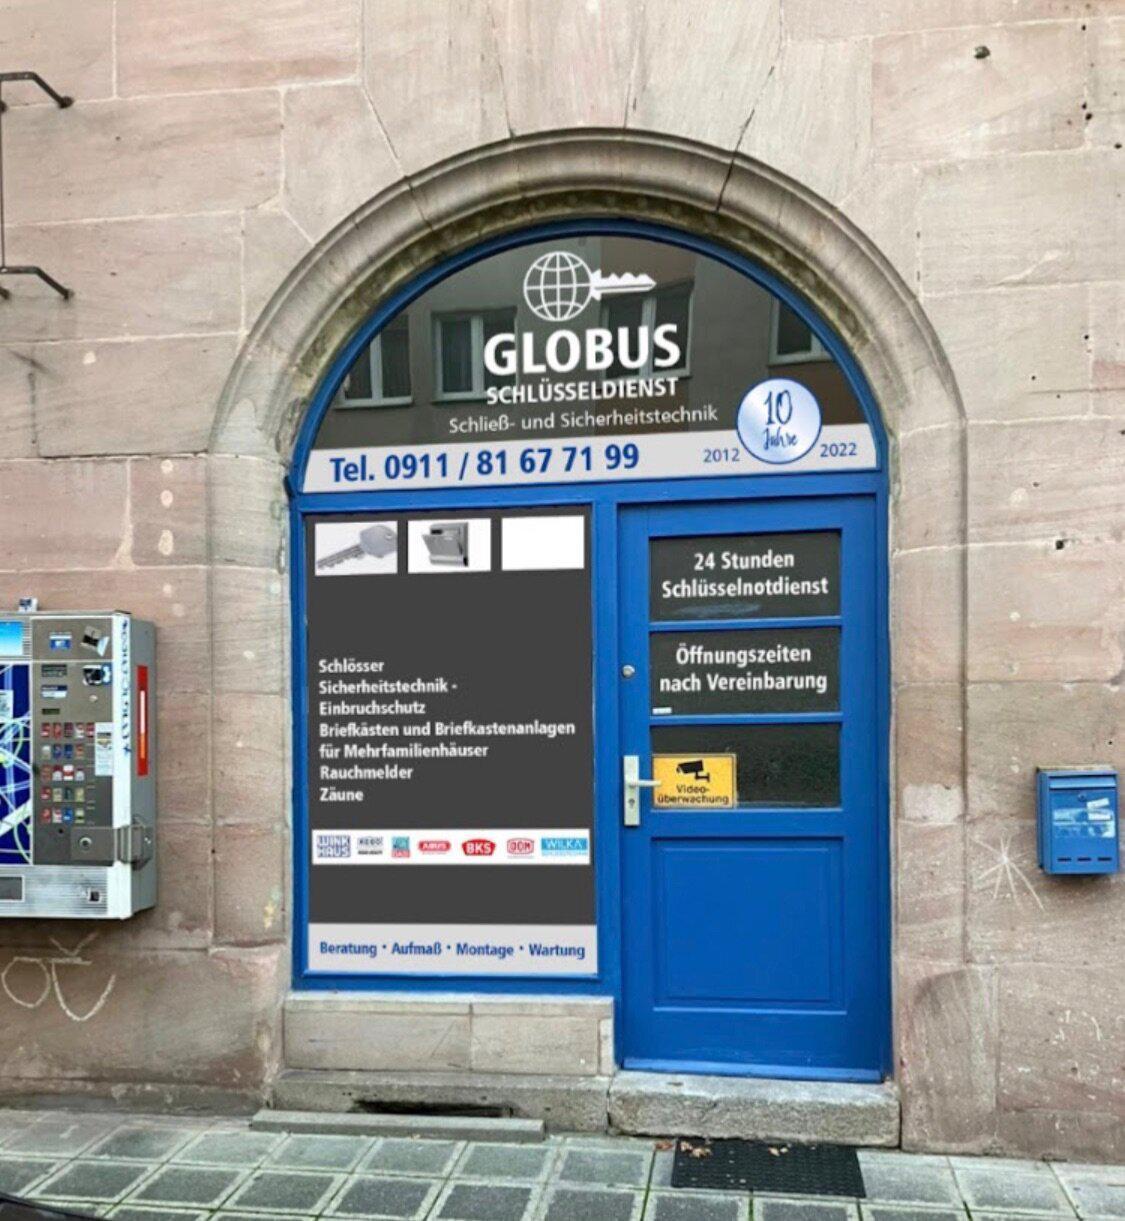 Bild 1 Globus Schlüsseldienst Schließ- und Sicherheitstechnik in Nürnberg